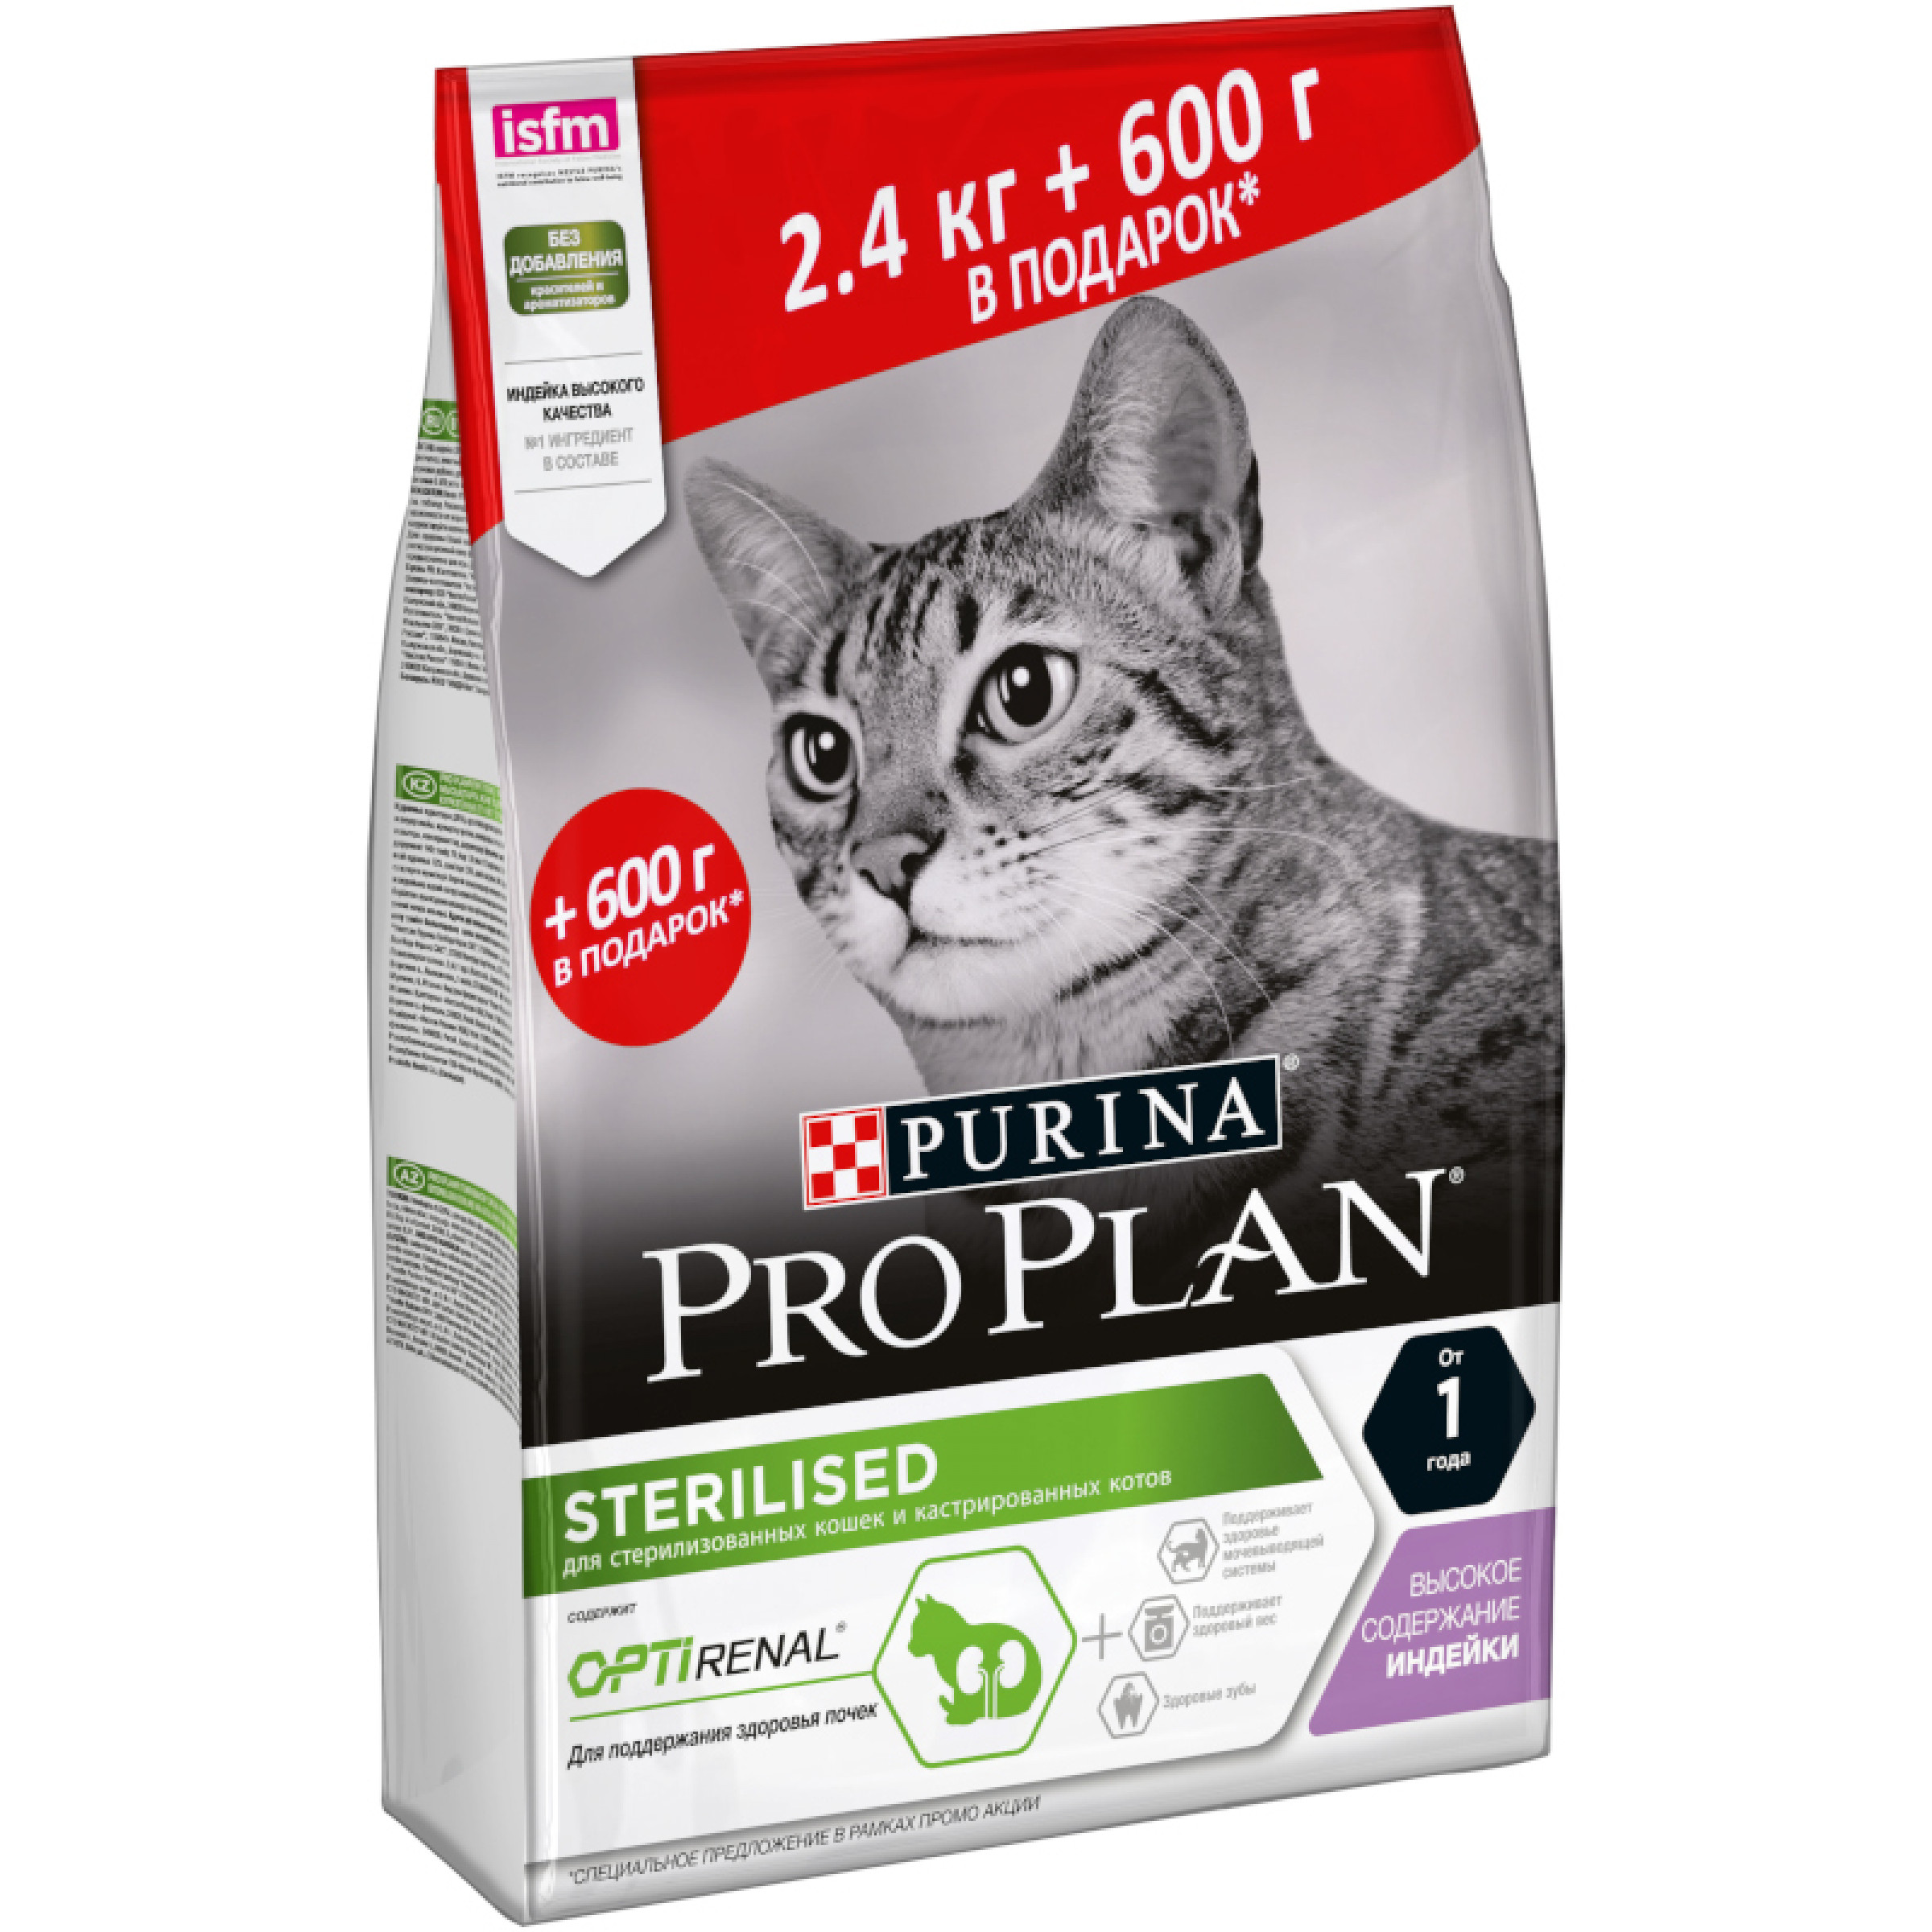 Сухой корм Purina Pro Plan для стерилизованных кошек и кастрированных котов с индейкой, 2,4кг+600гр в подарок